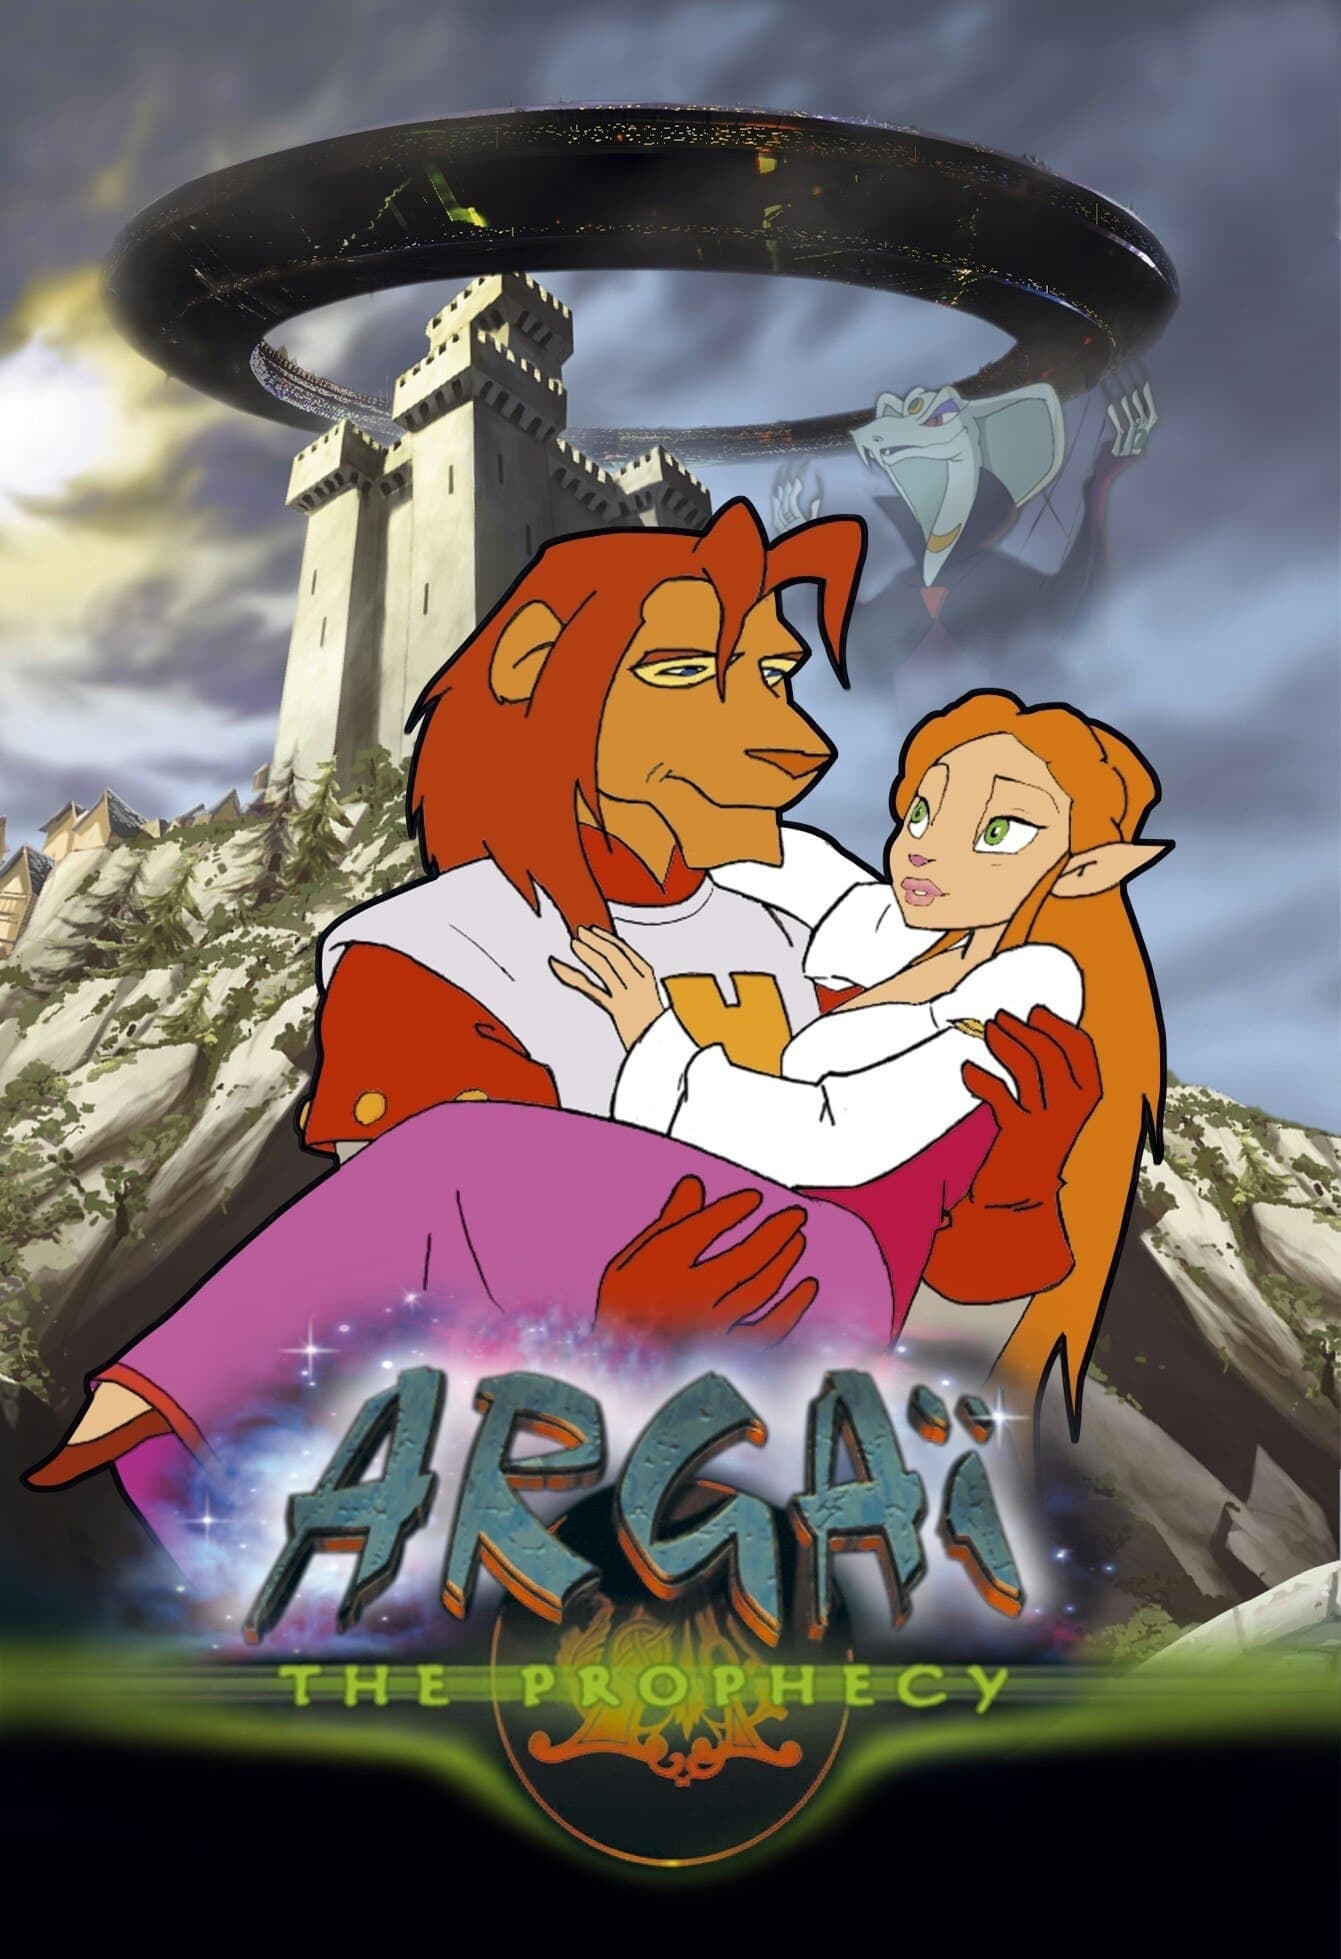 Argai: The Prophecy